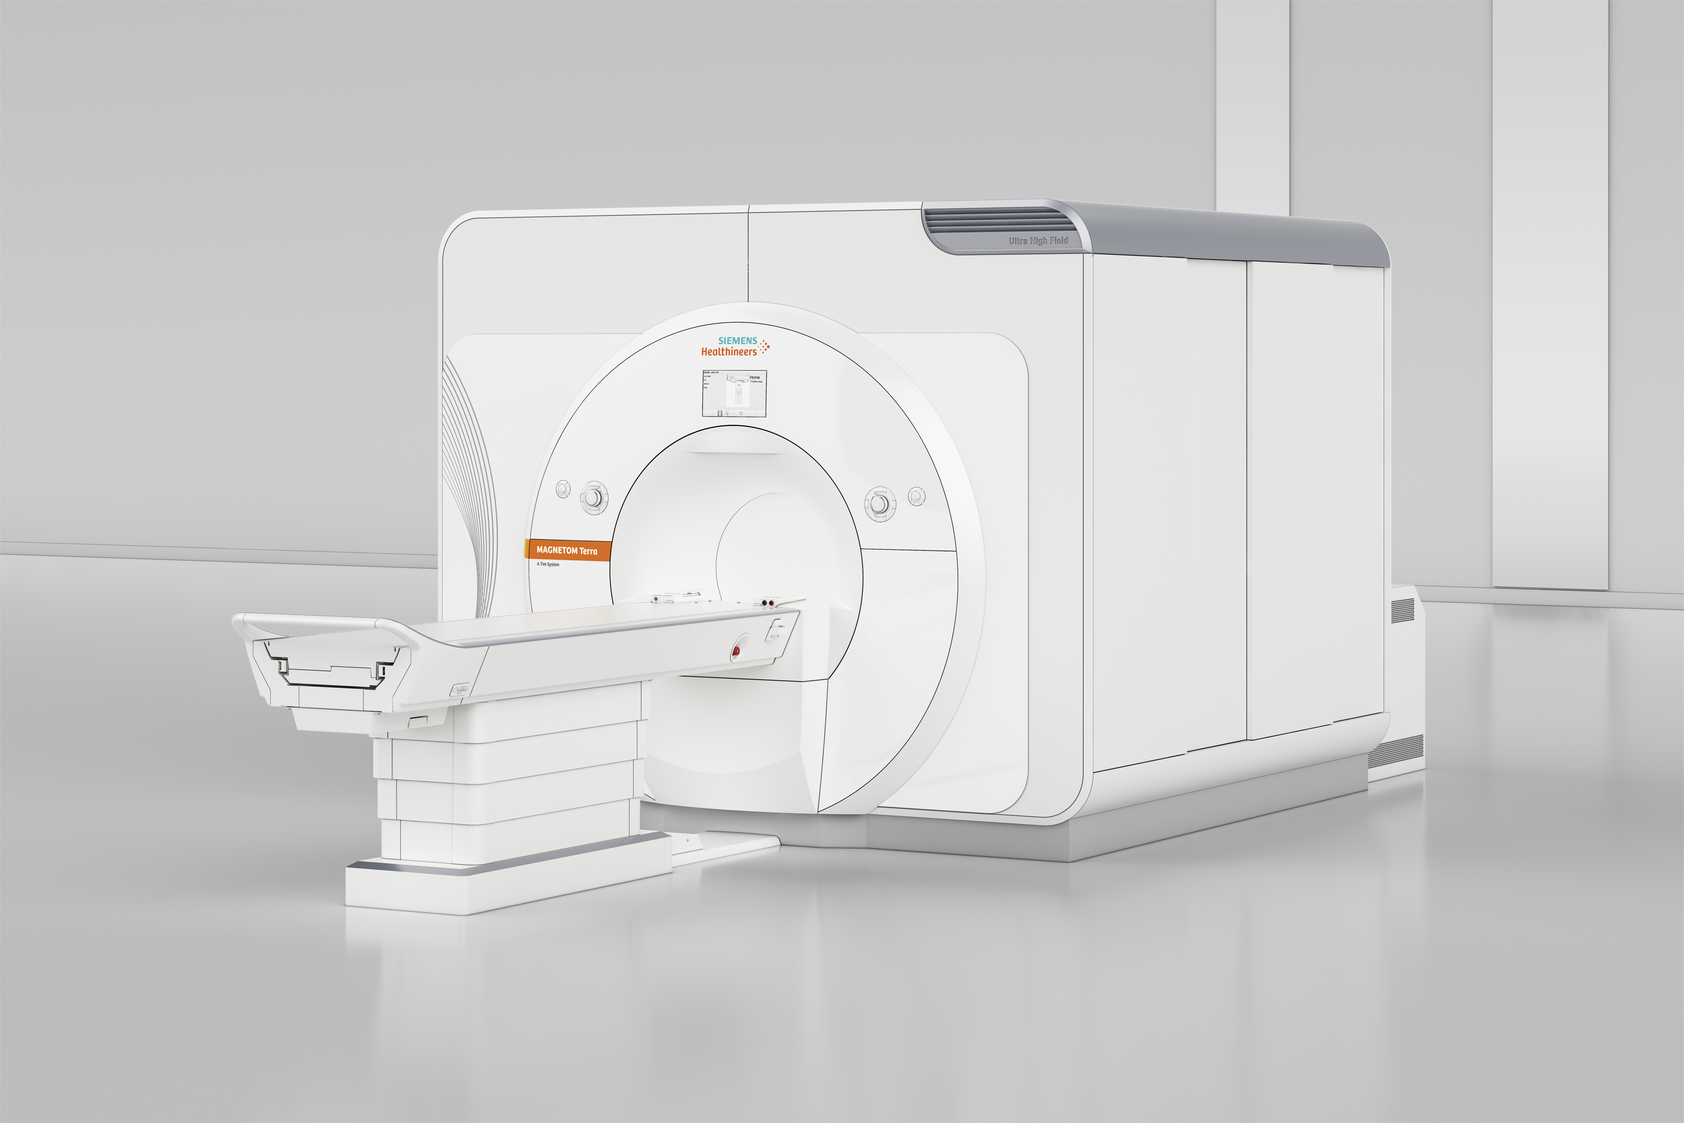 7-Tesla MRI scanner